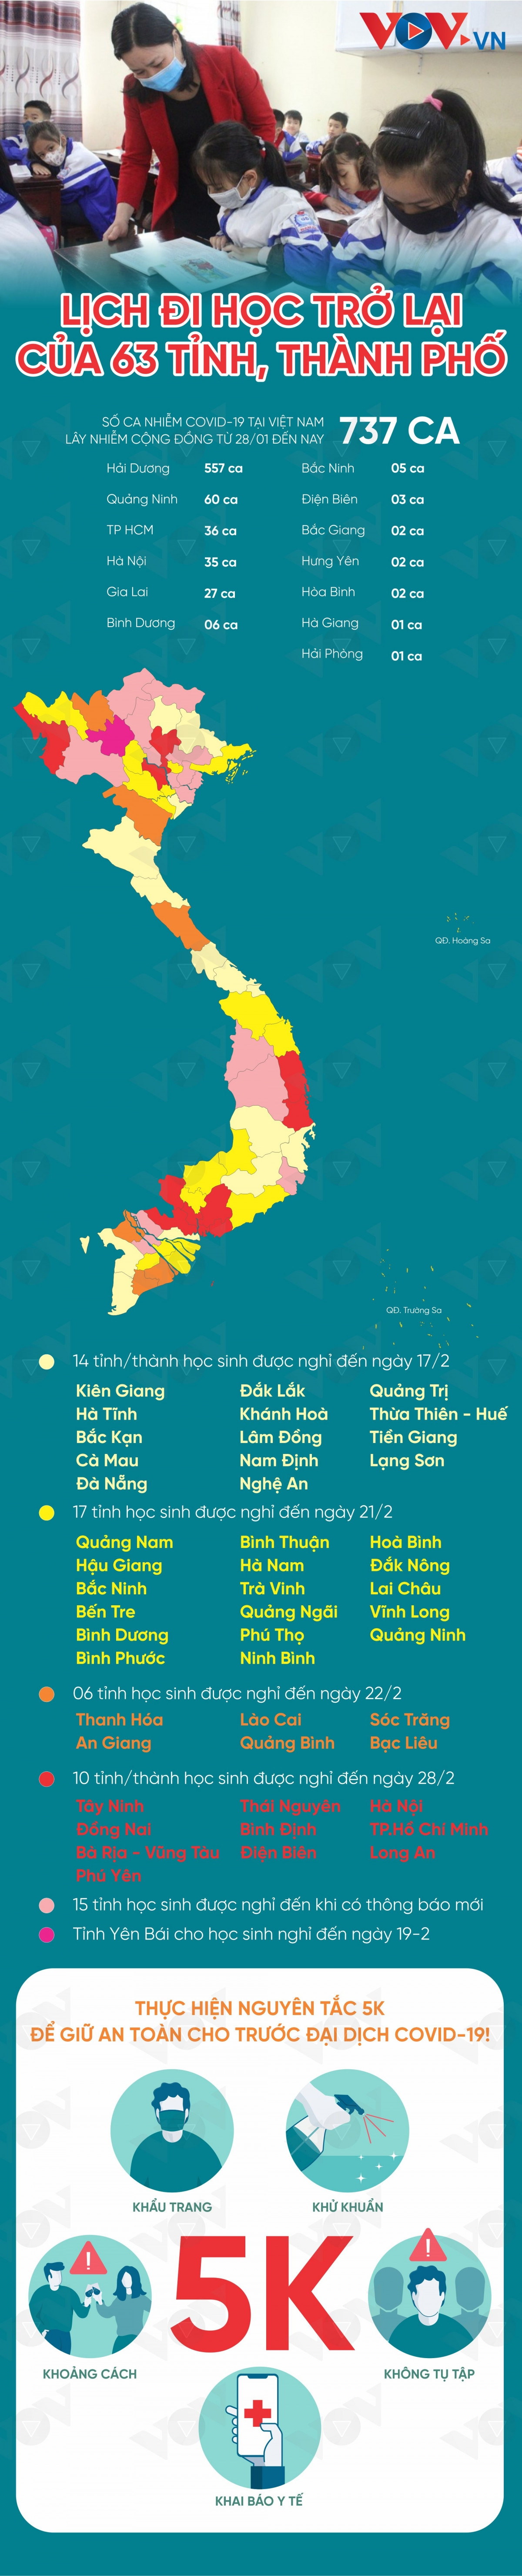 Infographic: Lịch trở lại trường của 63 tỉnh, thành phố sau Tết - 1